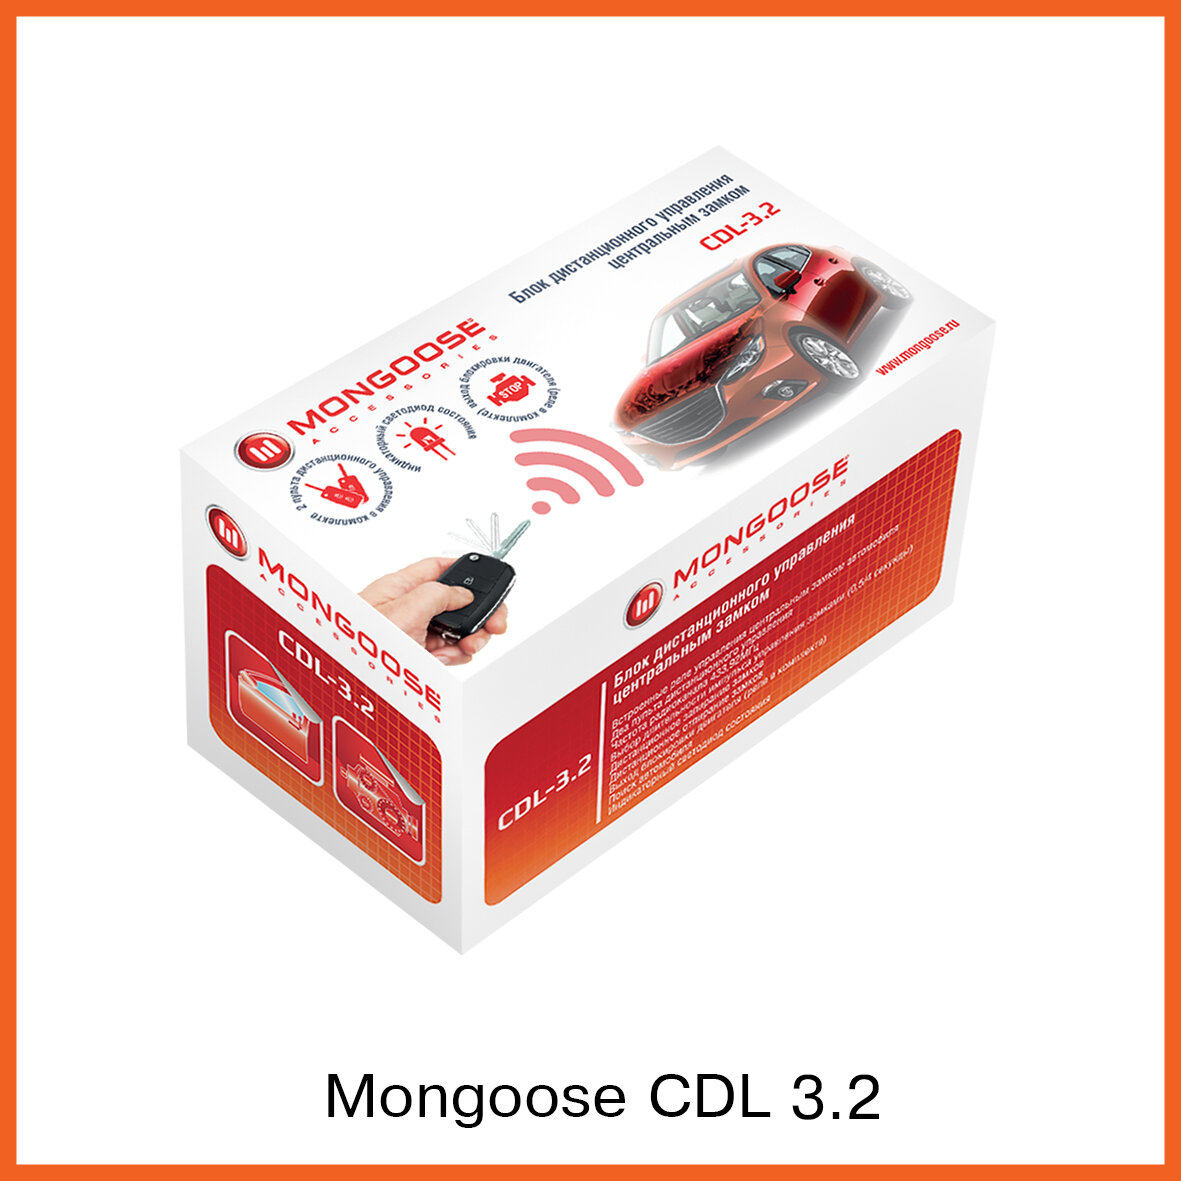 Модуль управления центральным замком Mongoose CDL-3.2